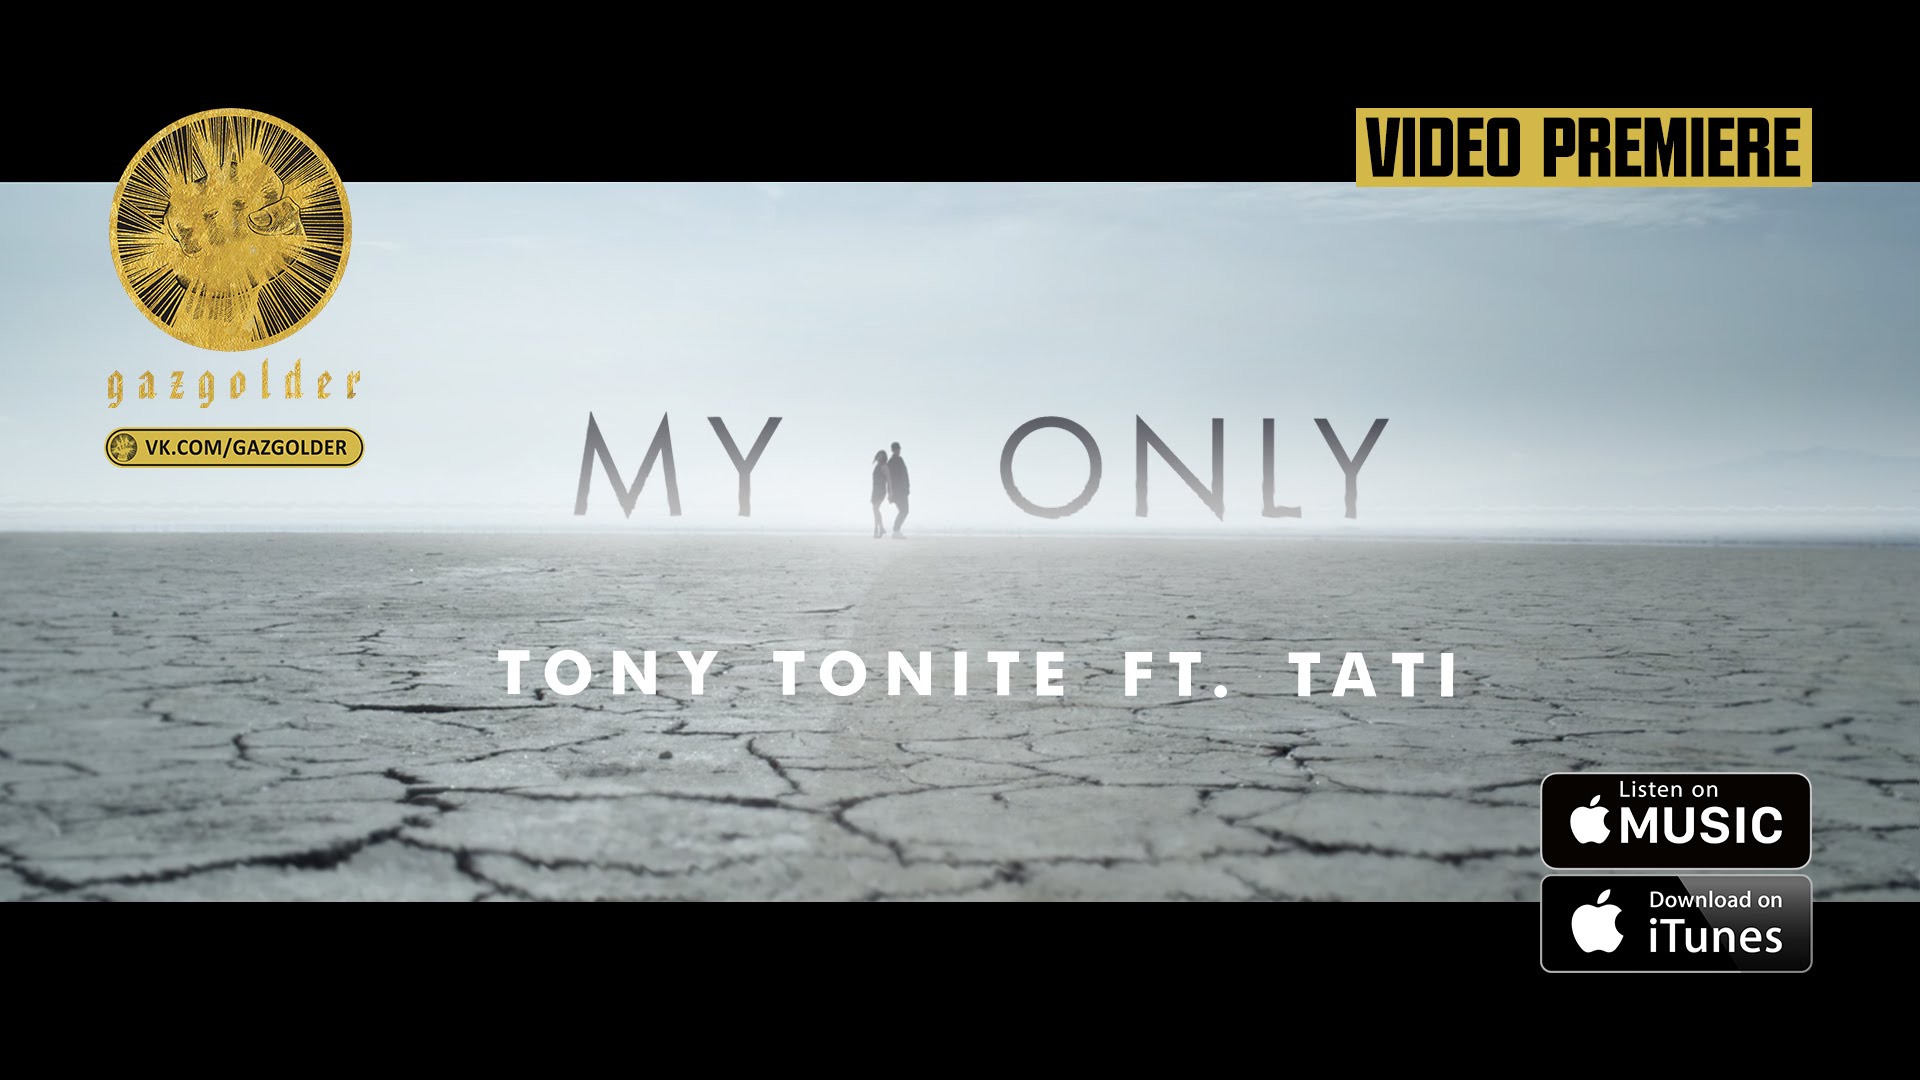 Tony Tonite Тати - My Only